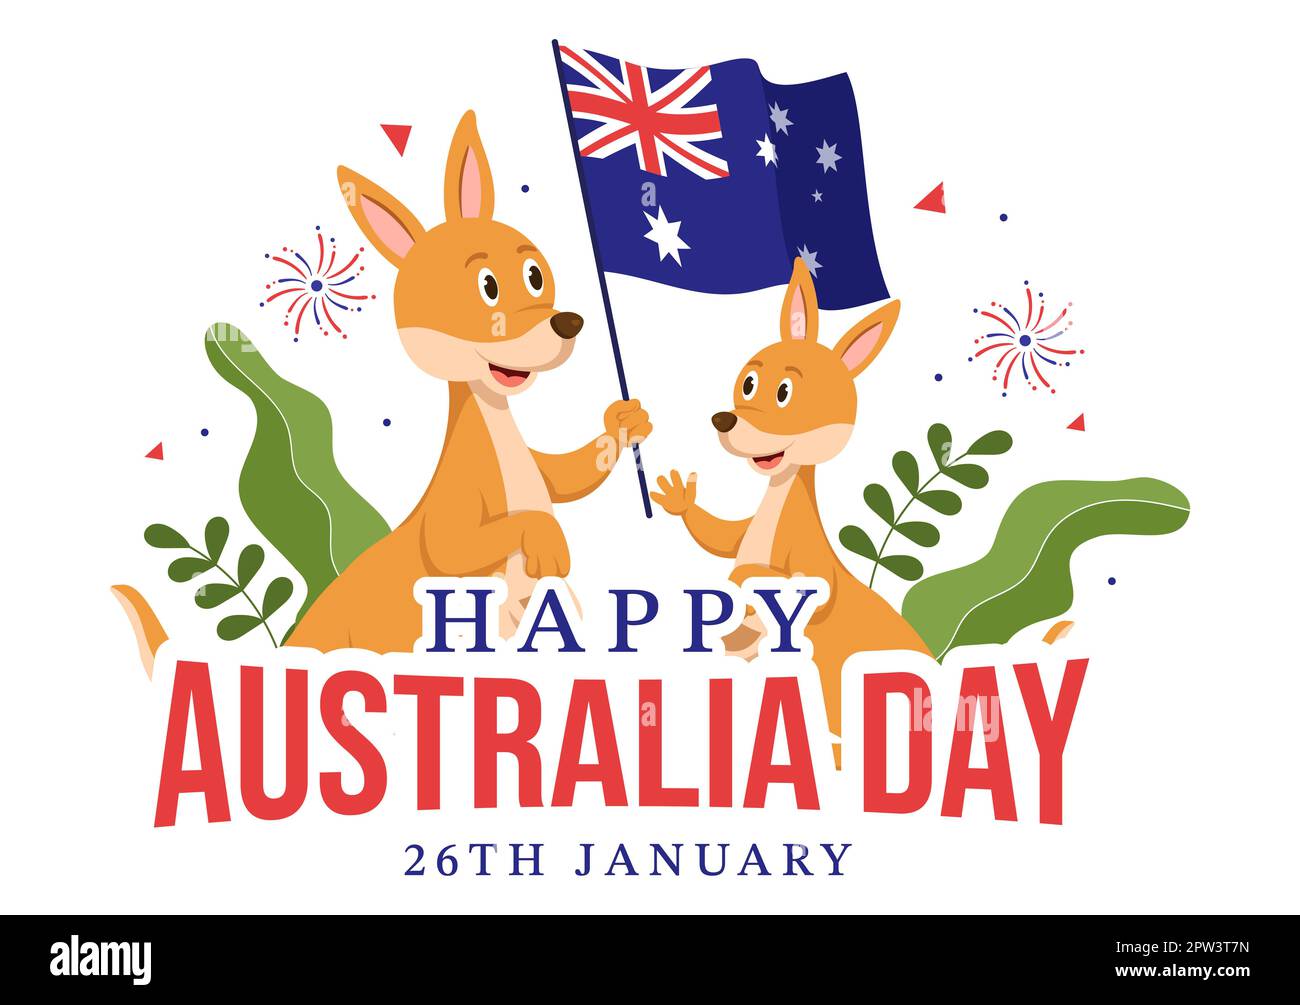 Happy Australia Day findet jedes Jahr am 26.. Januar mit Flaggen und Kängurus in der flachen, handgezogenen Schablone statt Stockfoto